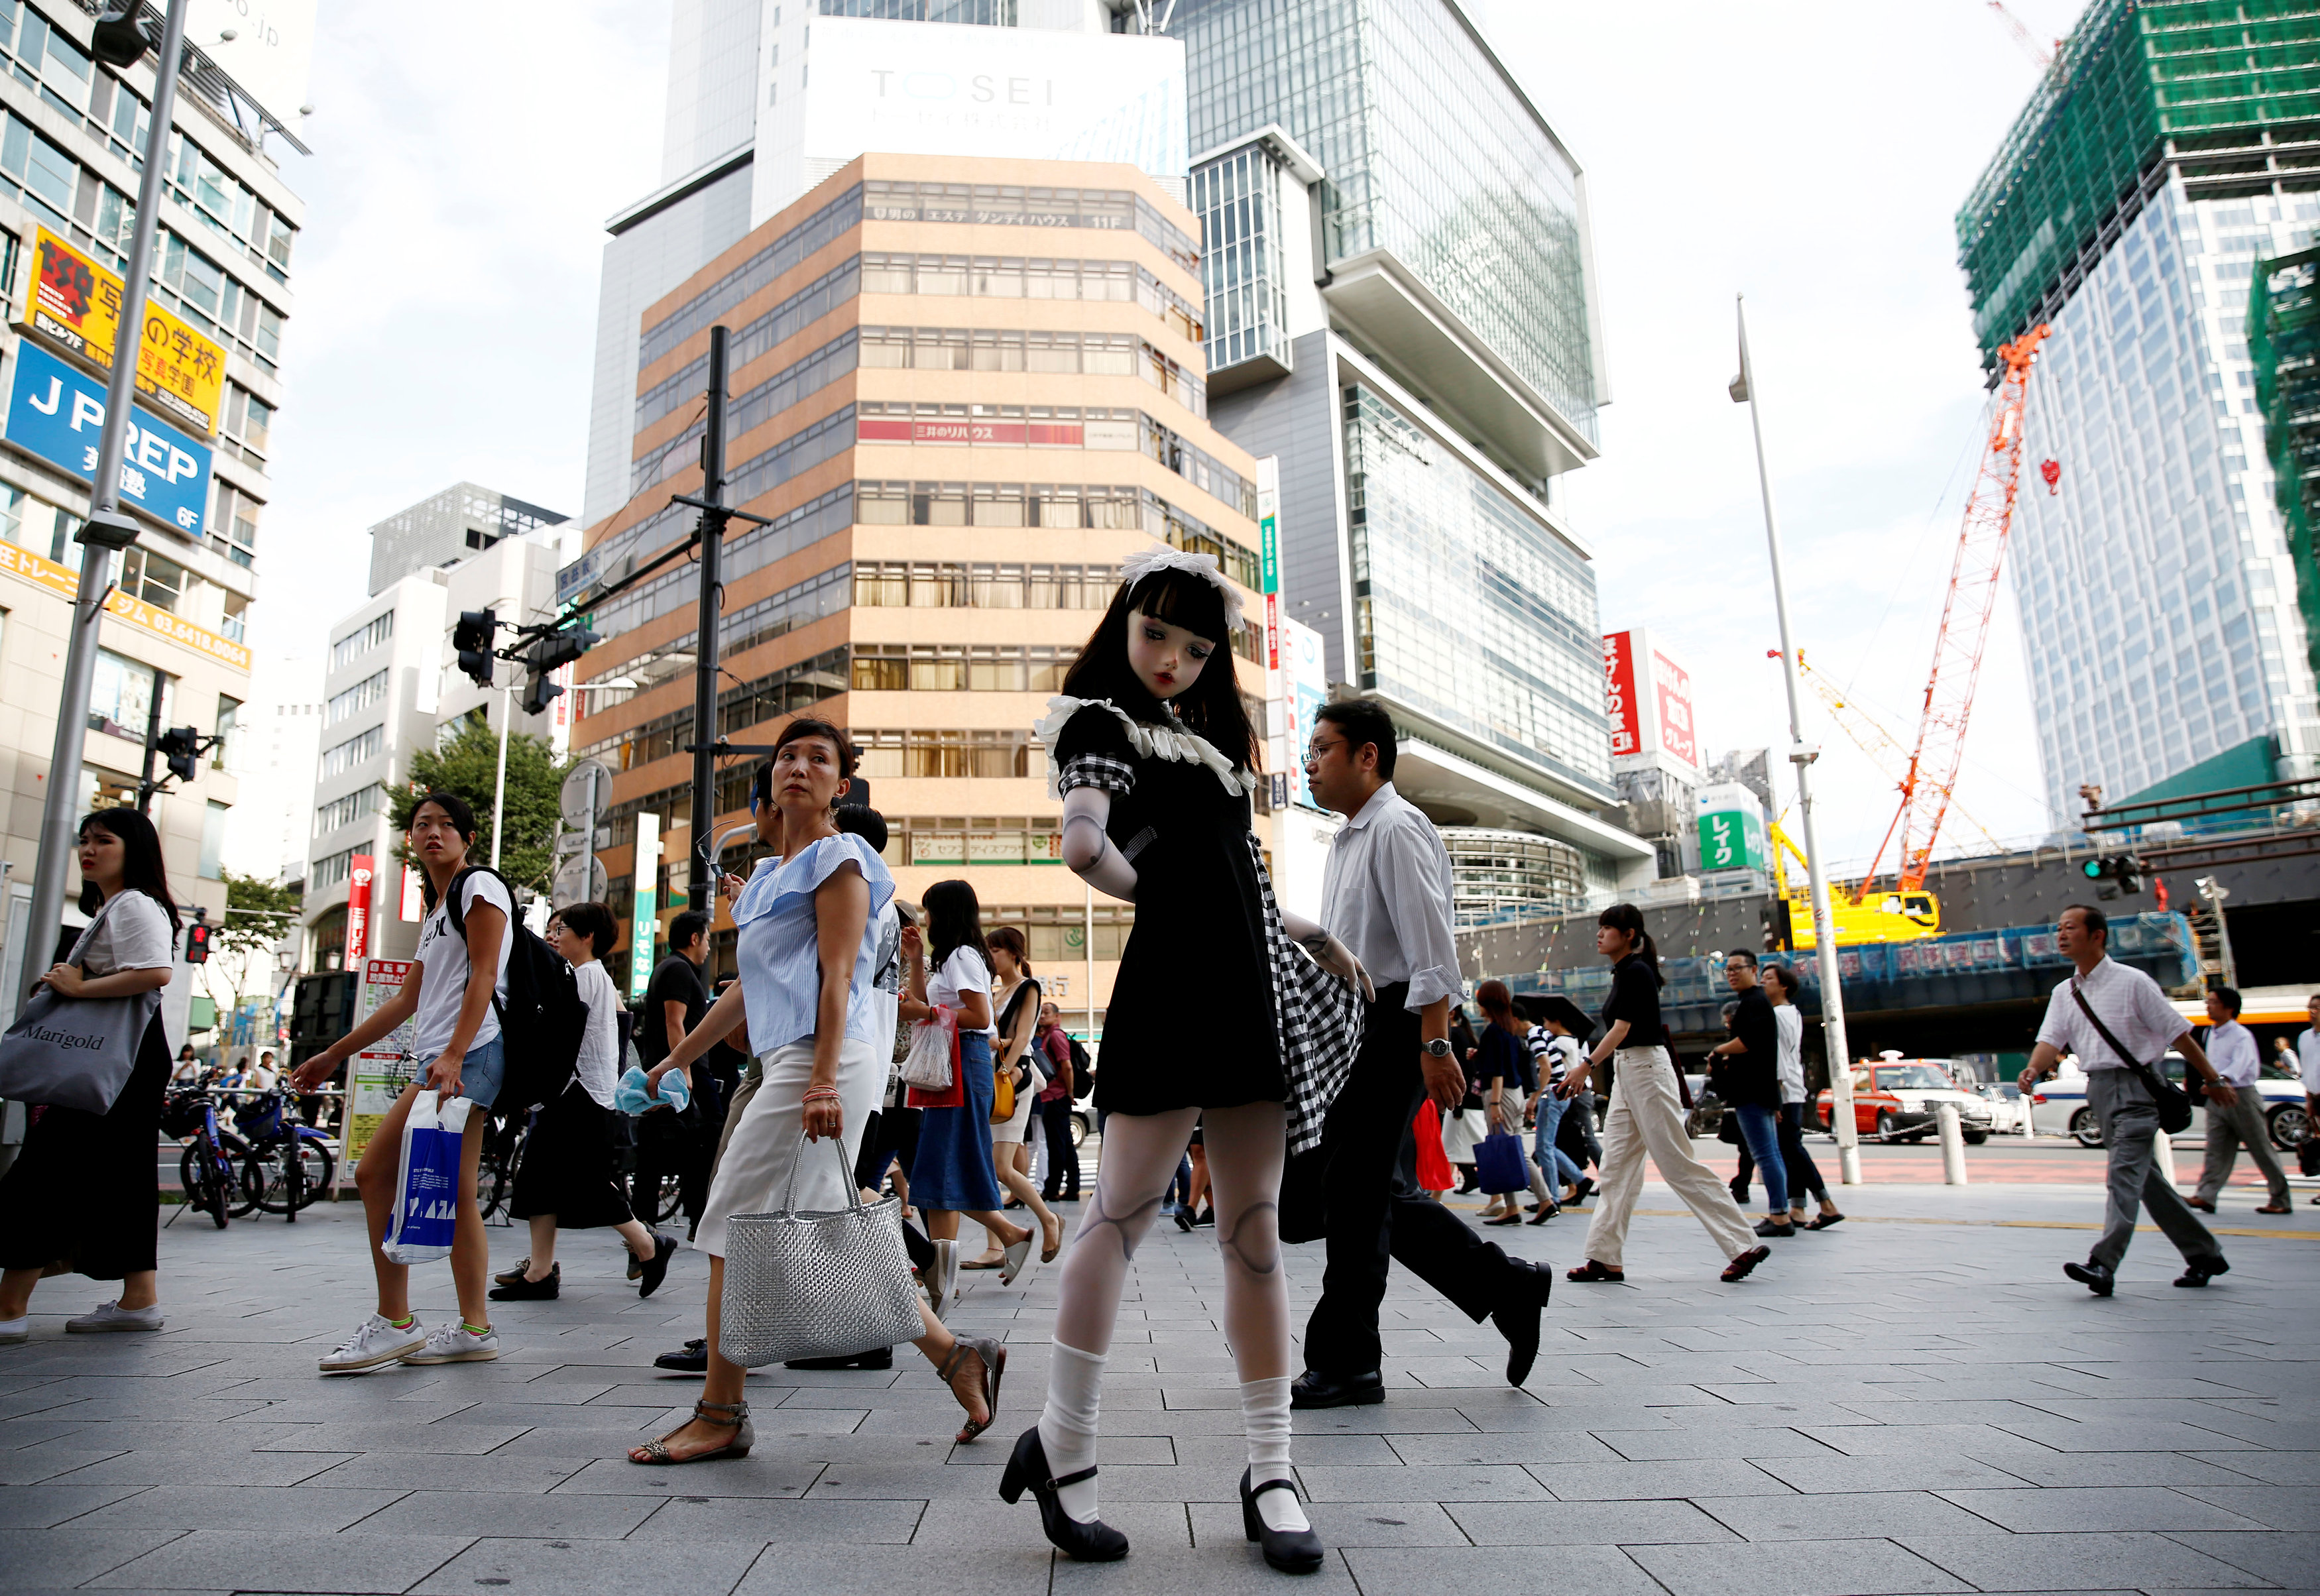 لولو هاشيموتو وسط المواطنين فى شوارع طوكيو